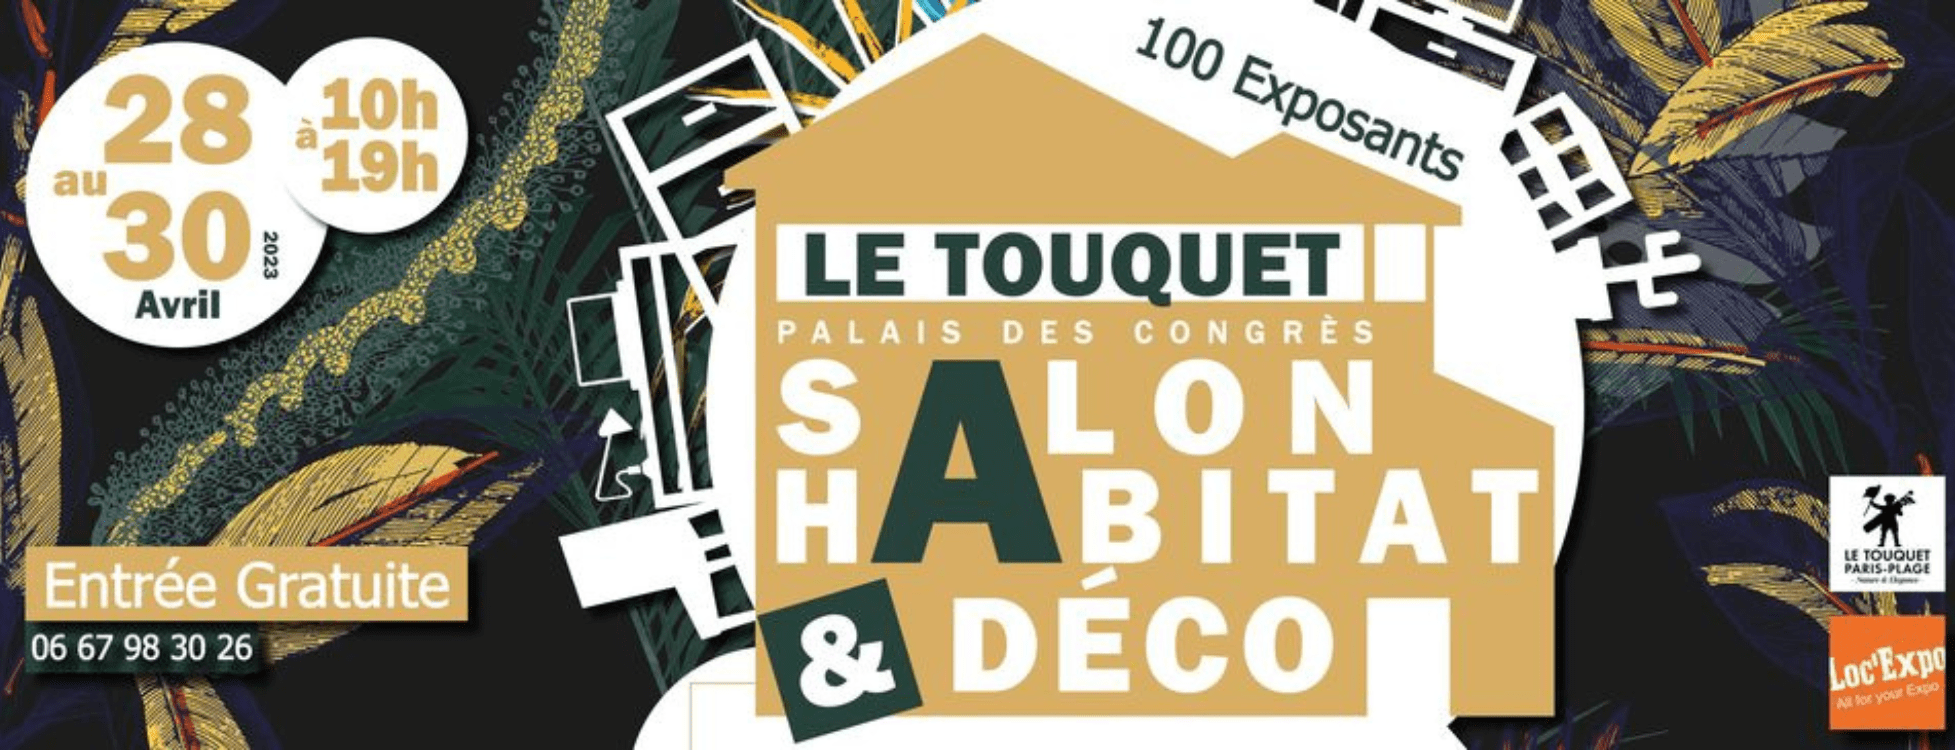 Salon de l'habitat, Le touquet - Combles harnois.fr